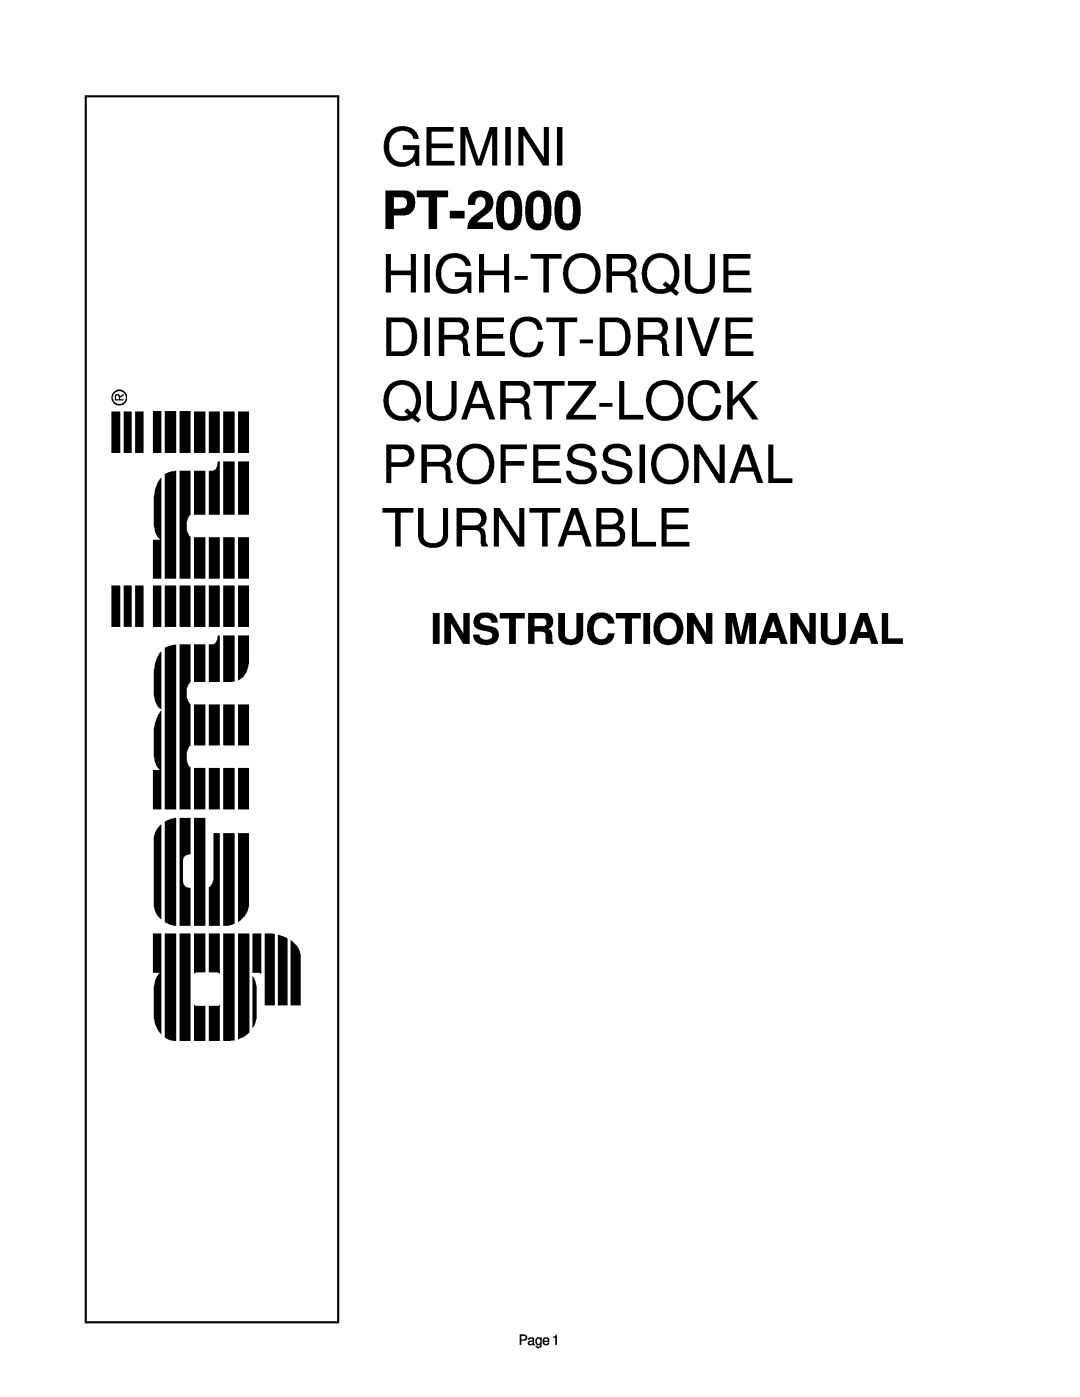 Gemini PT-2000 instruction manual Gemini 